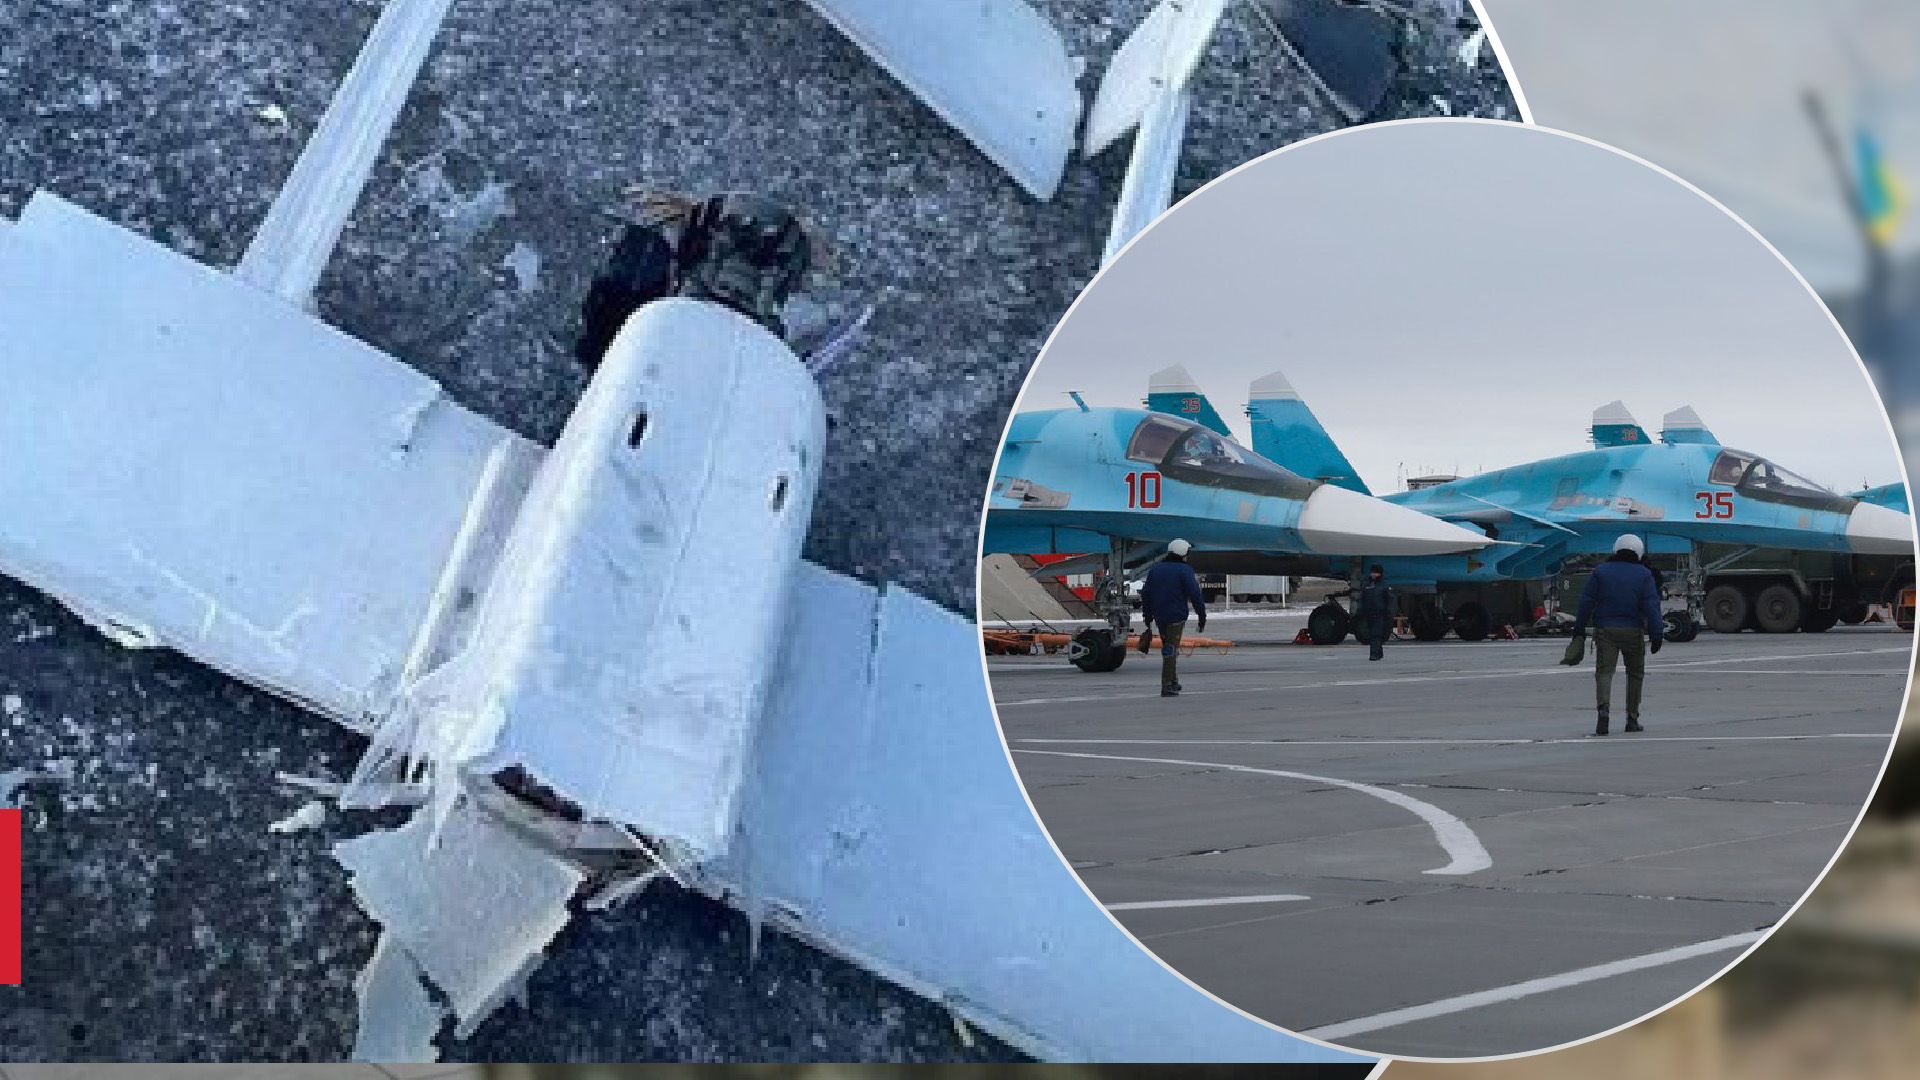 Ранен начальник штаба, работники ОМОН и ФСБ: новые детали атаки на аэродром в Морозовске - 24 Канал